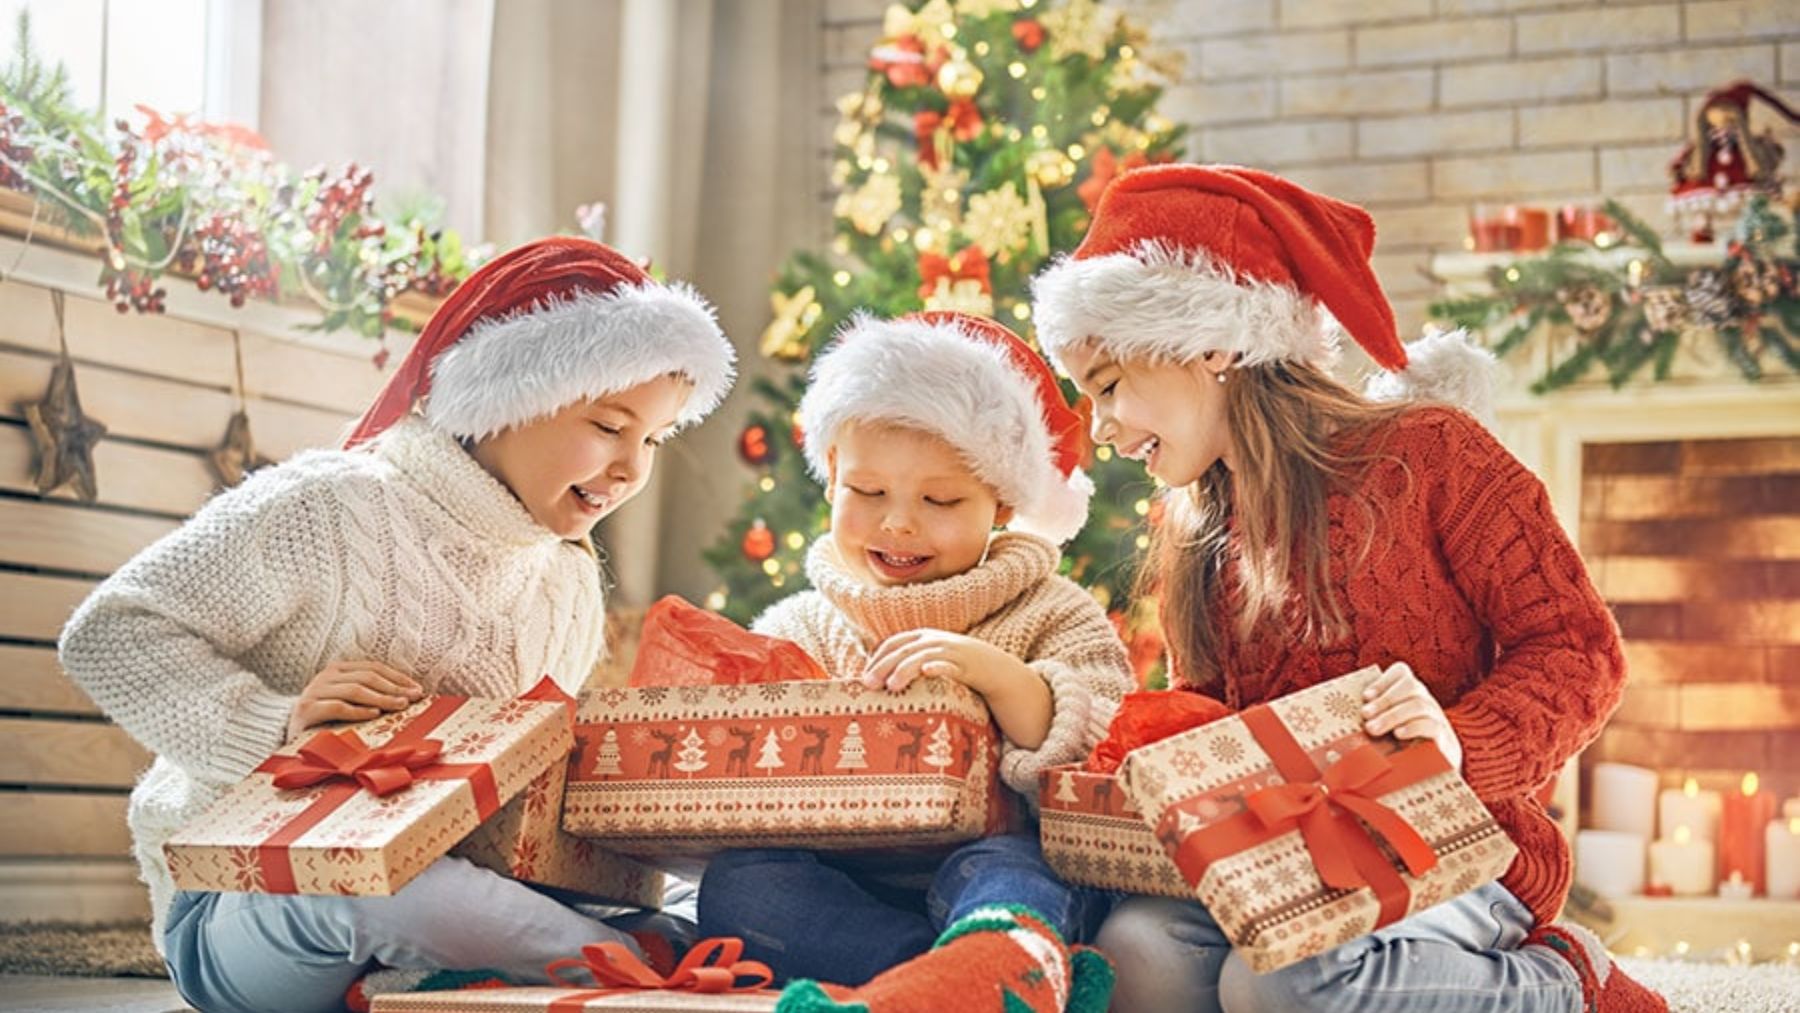 Descubre la regla de los 4 juguetes para elegir los regalos de los niños esta Navidad